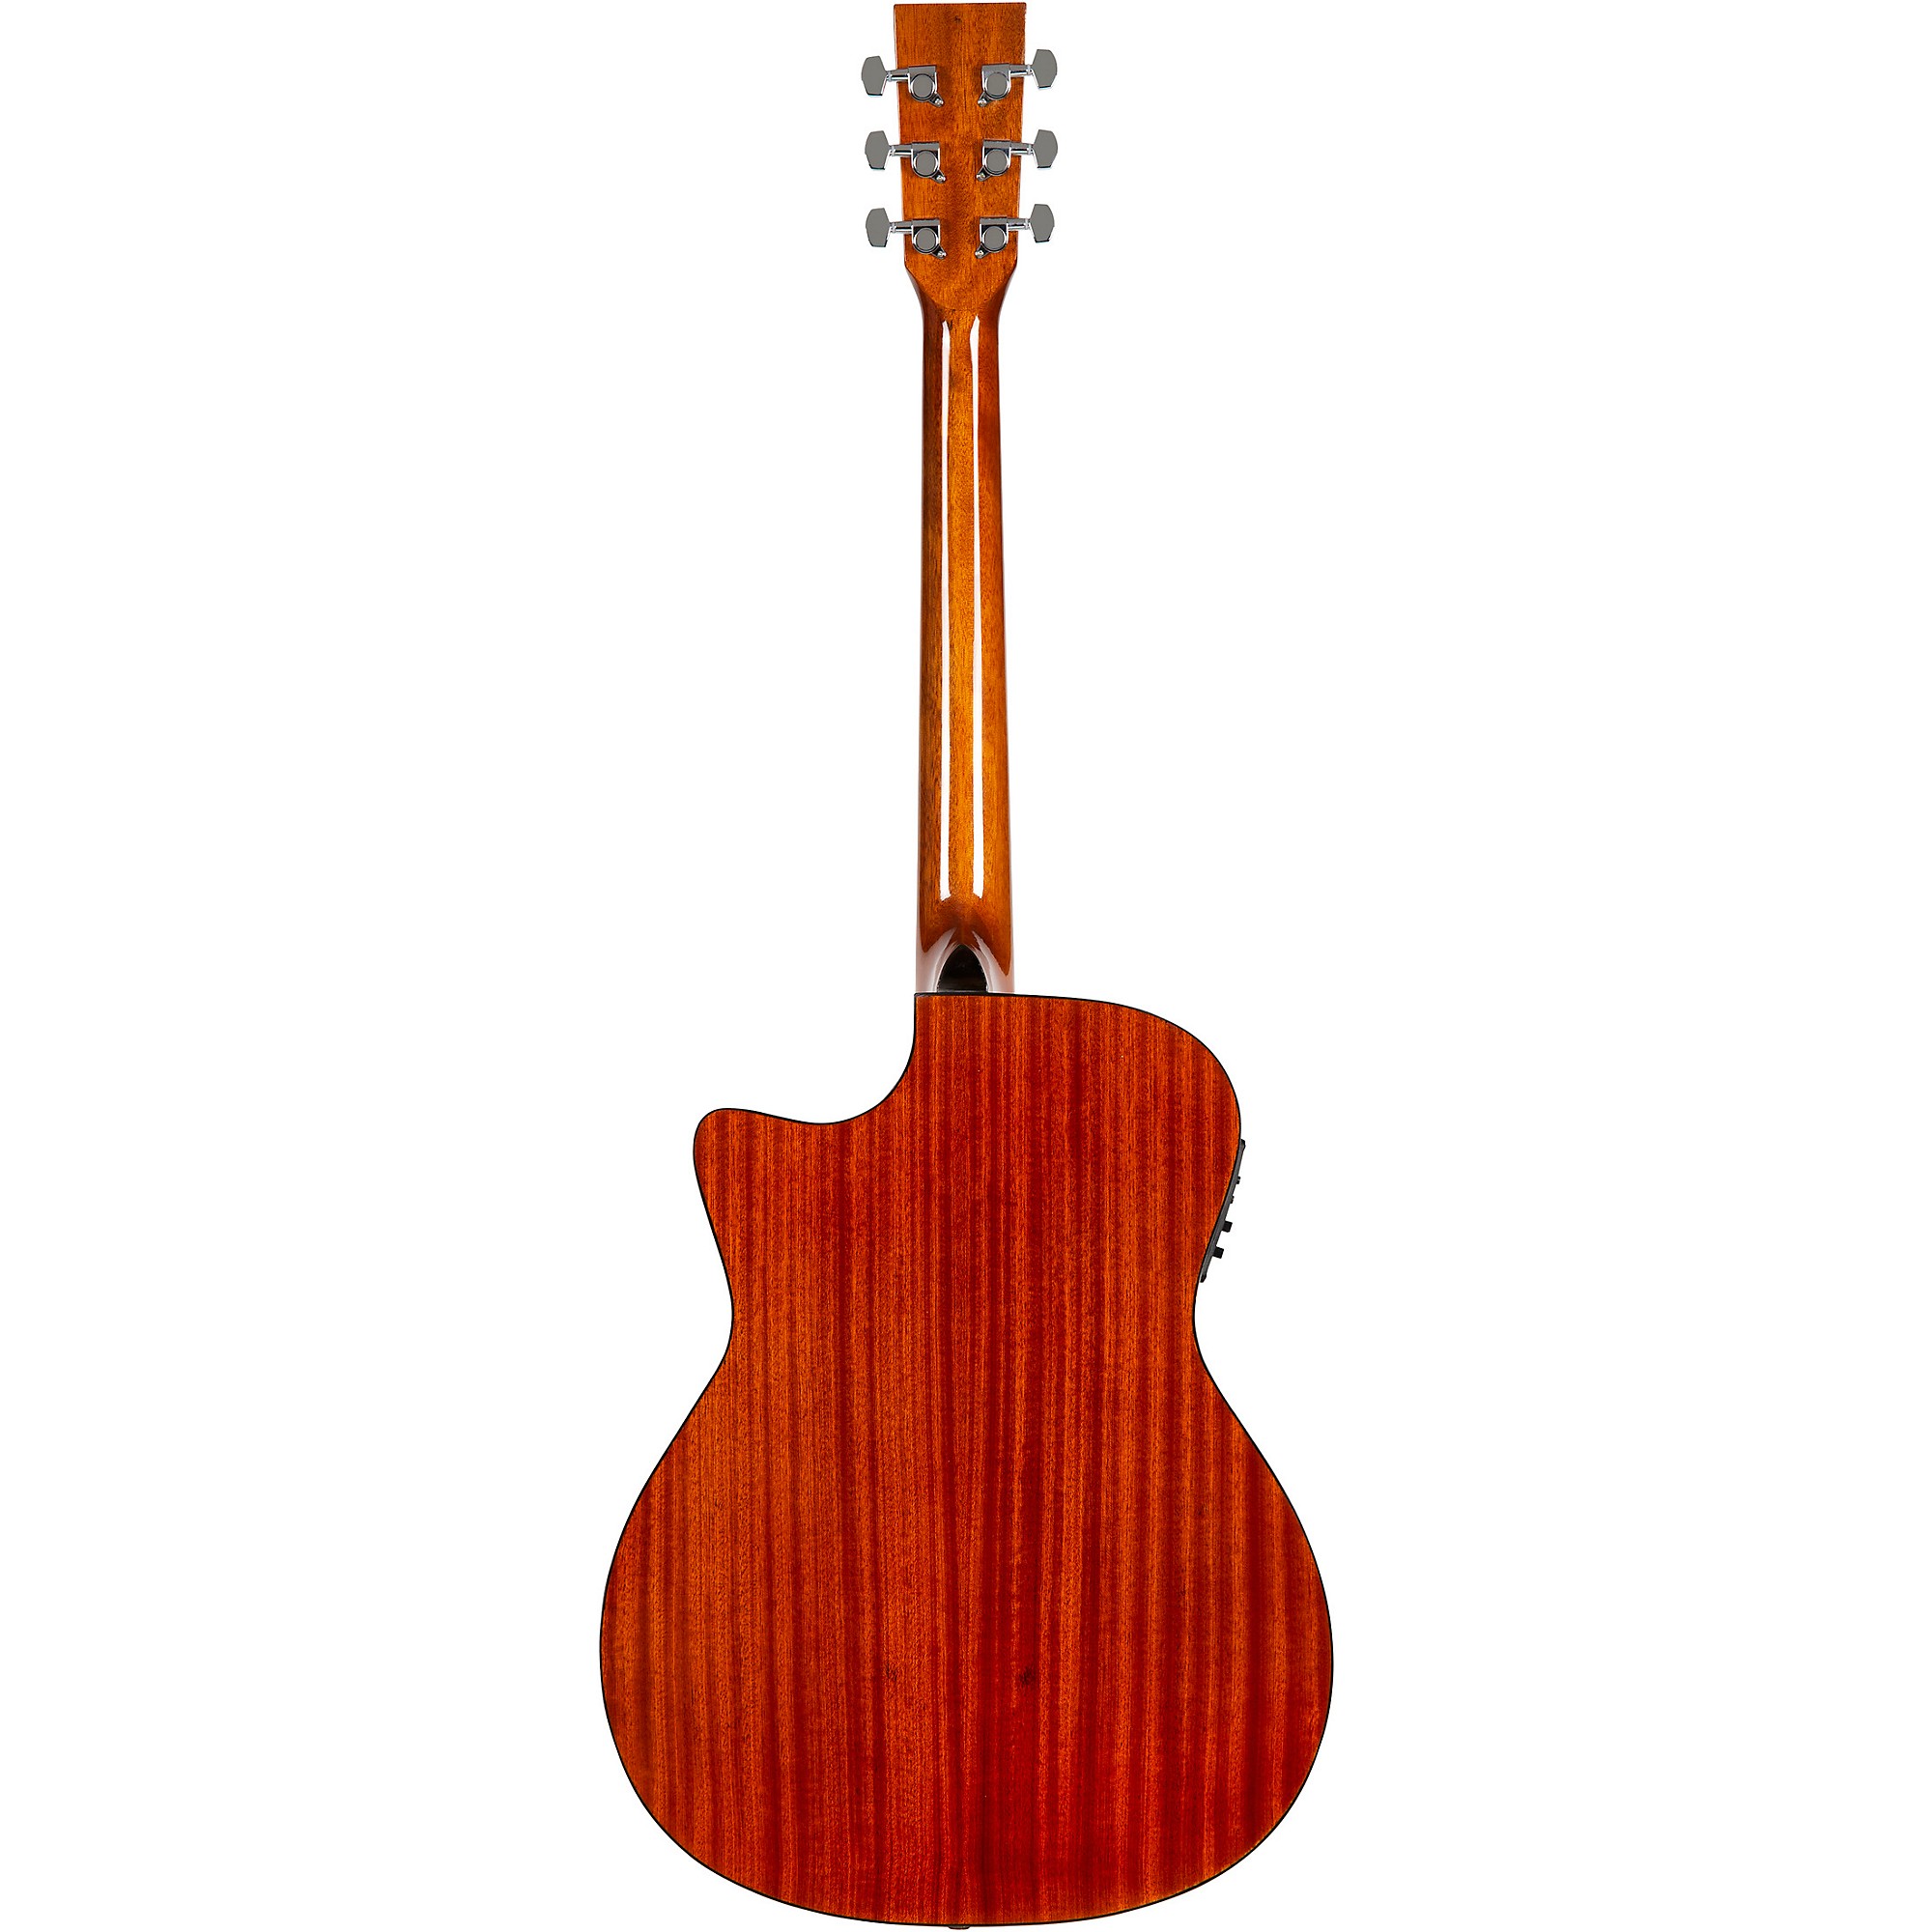 Акустически-электрическая гитара Rogue RA-090 Concert Cutaway из красного дерева occidental eden beruwala ex eden resort